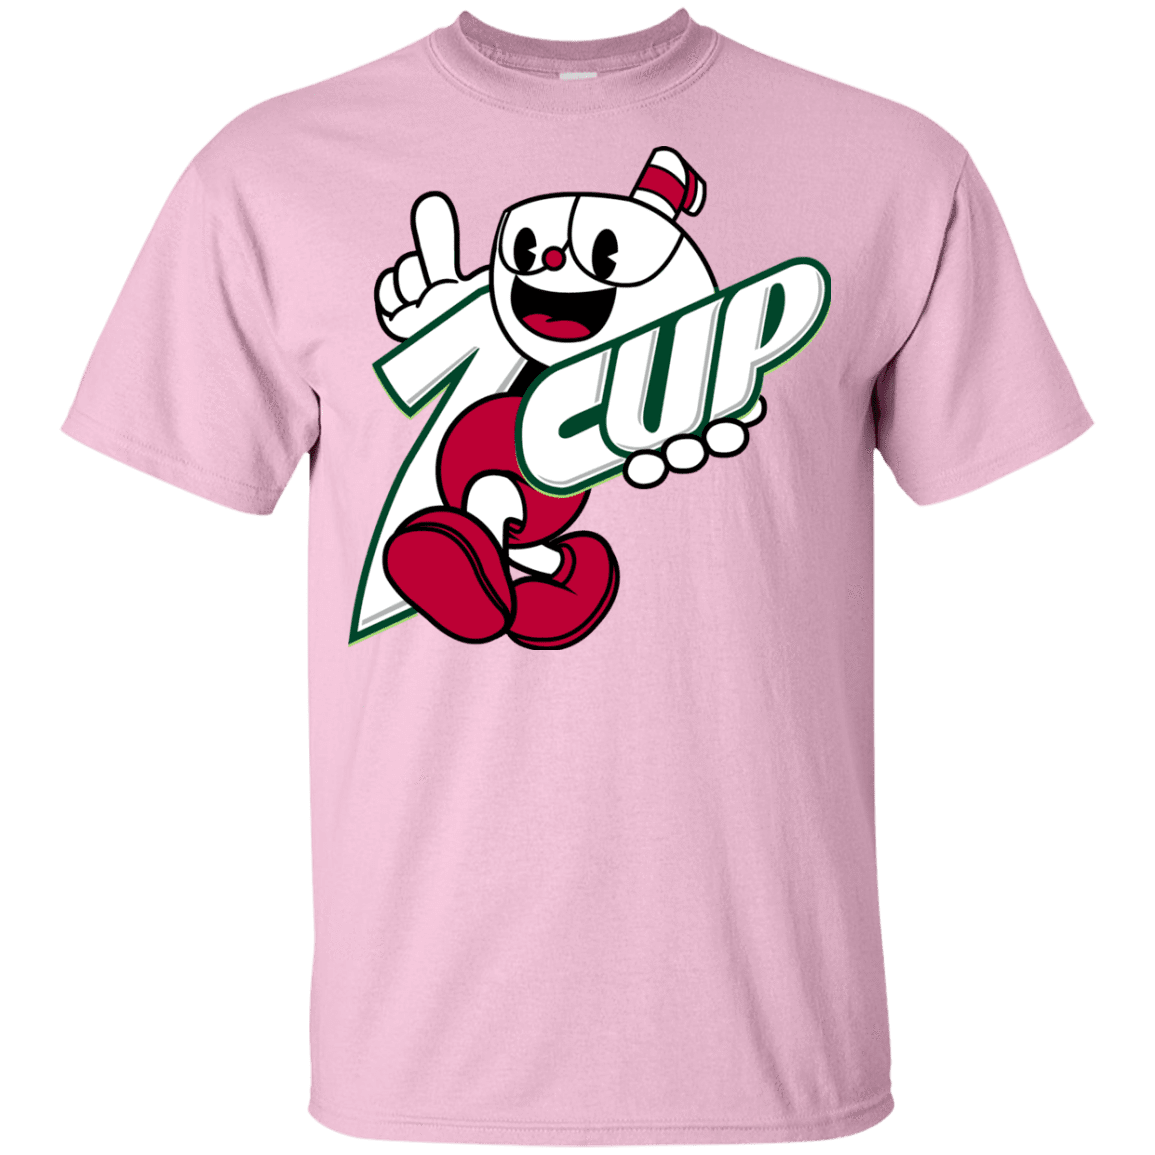 T-Shirts Light Pink / YXS 1cup Youth T-Shirt